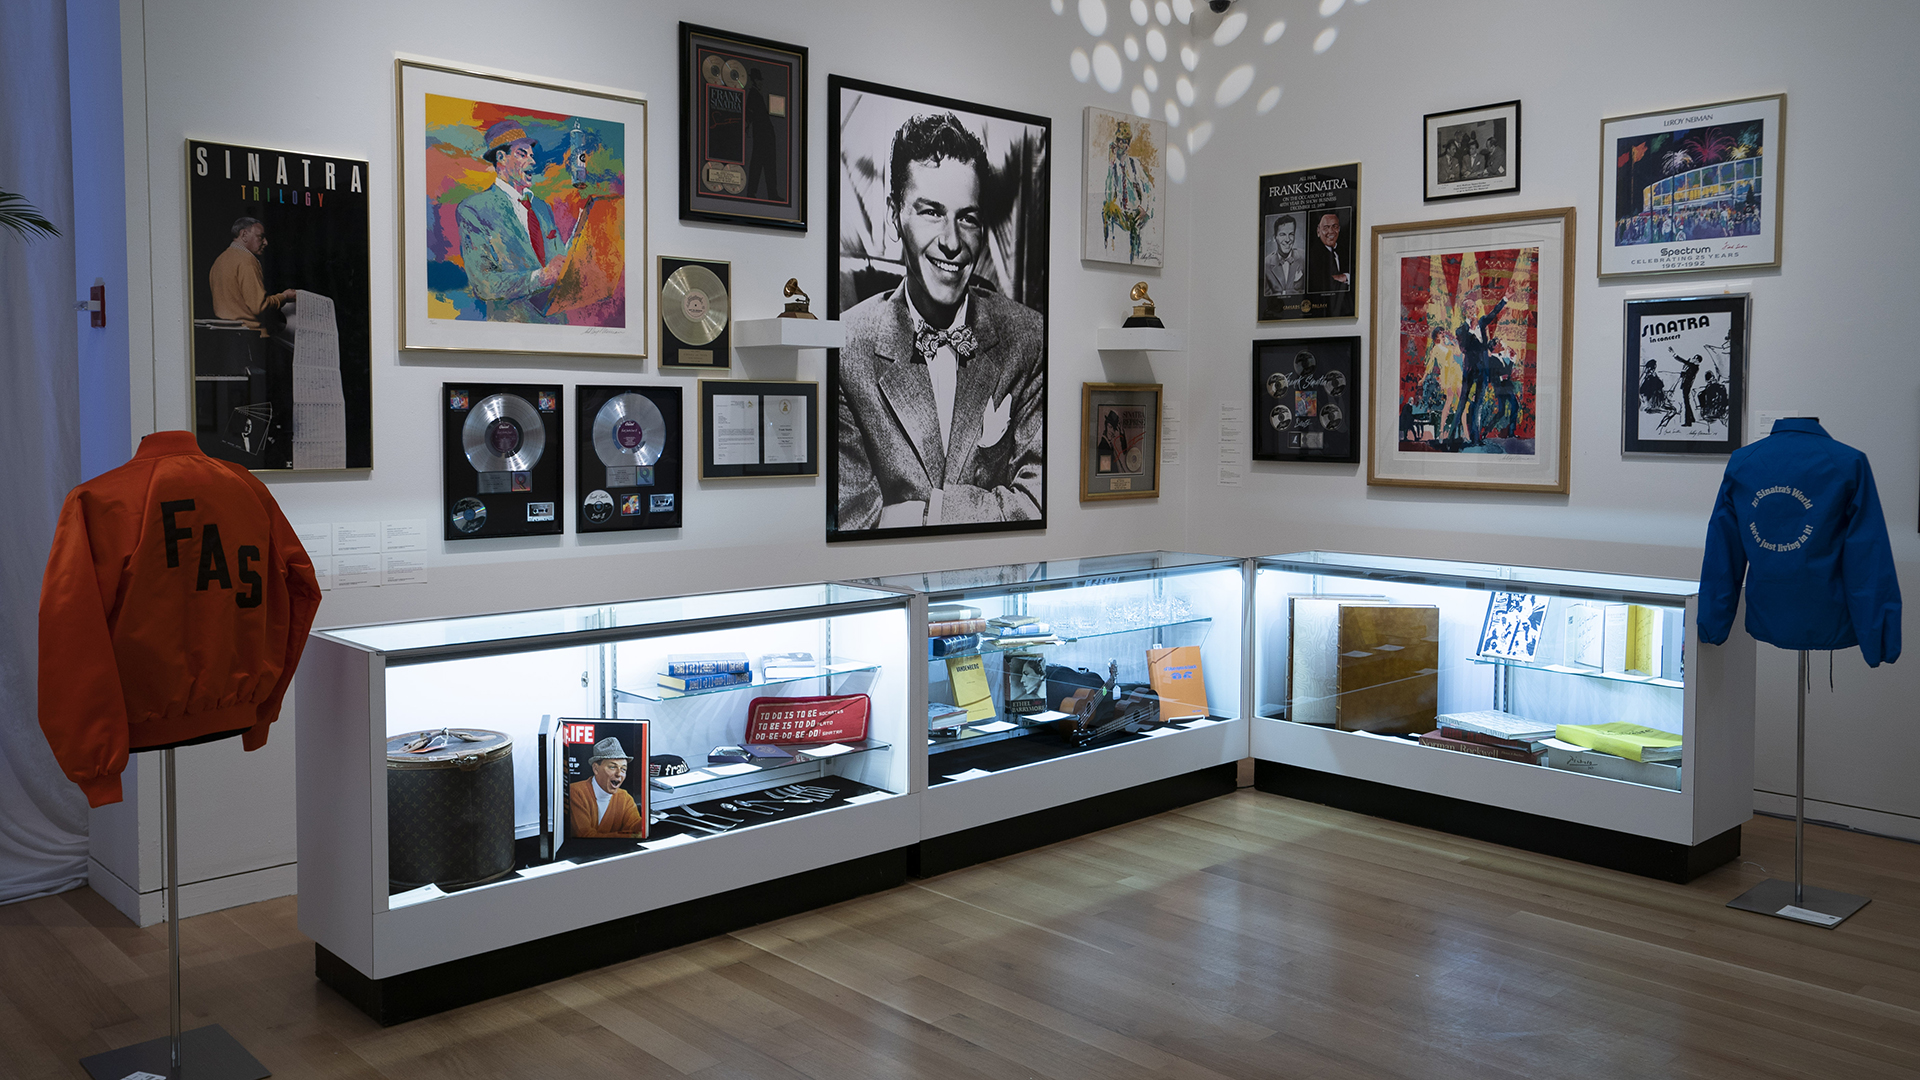 Los recuerdos de Sinatra se muestran en Sotheby’s desde el 30 de noviembre de 2018 en Nueva York (Photo by Don EMMERT / AFP)